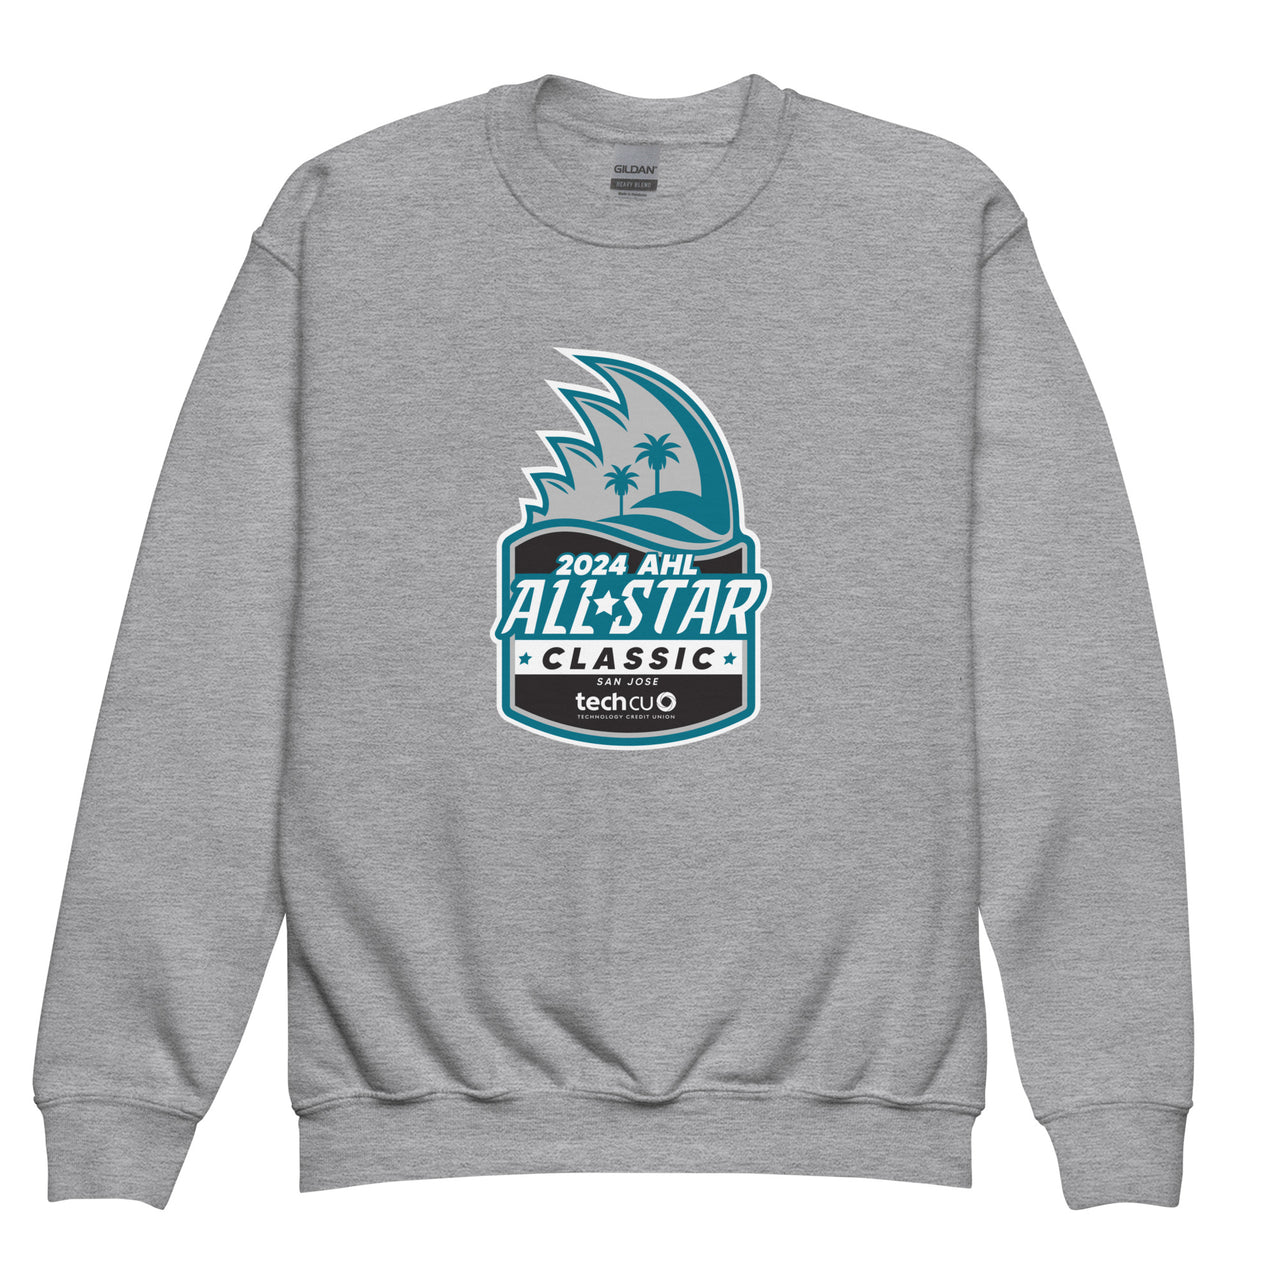 2024 AHL All-Star Primary Logo Youth Crewneck Sweatshirt